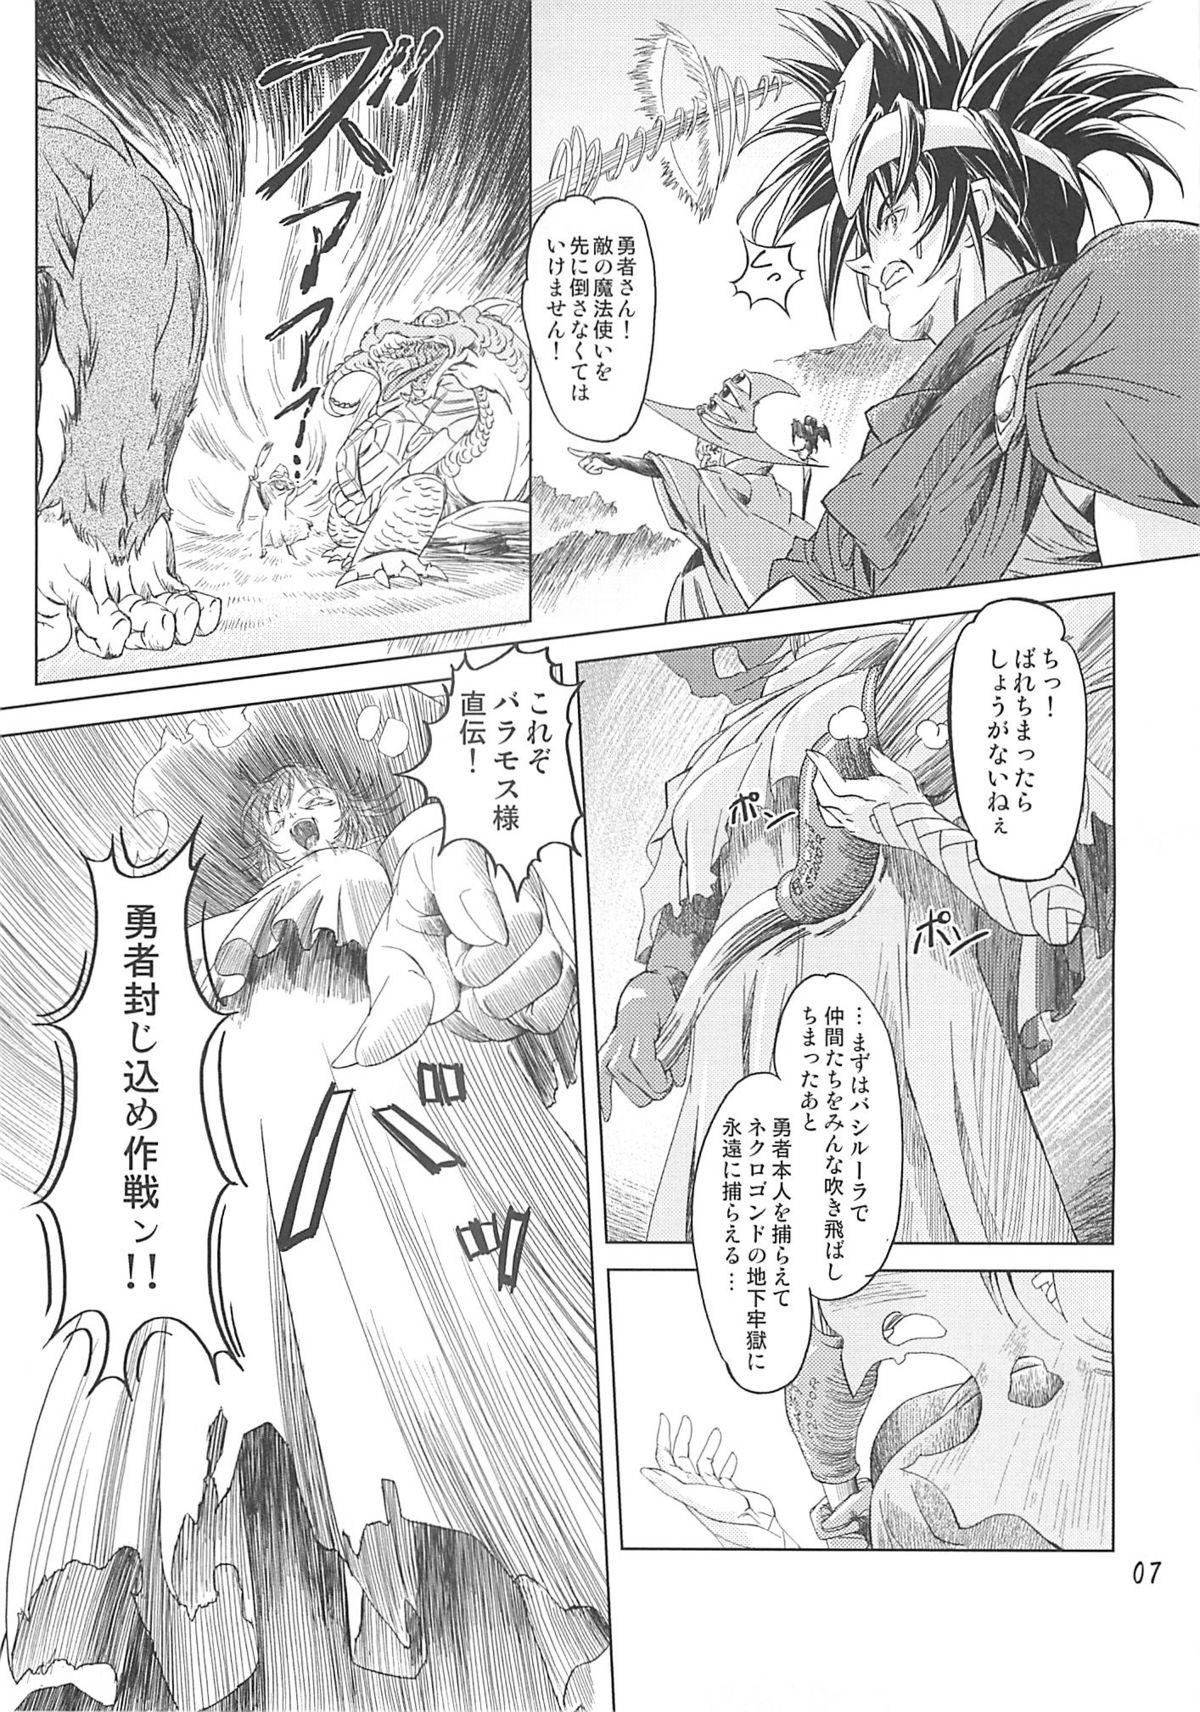 Titten Mahoutsukai vs. - Dragon quest iii Doggy - Page 6